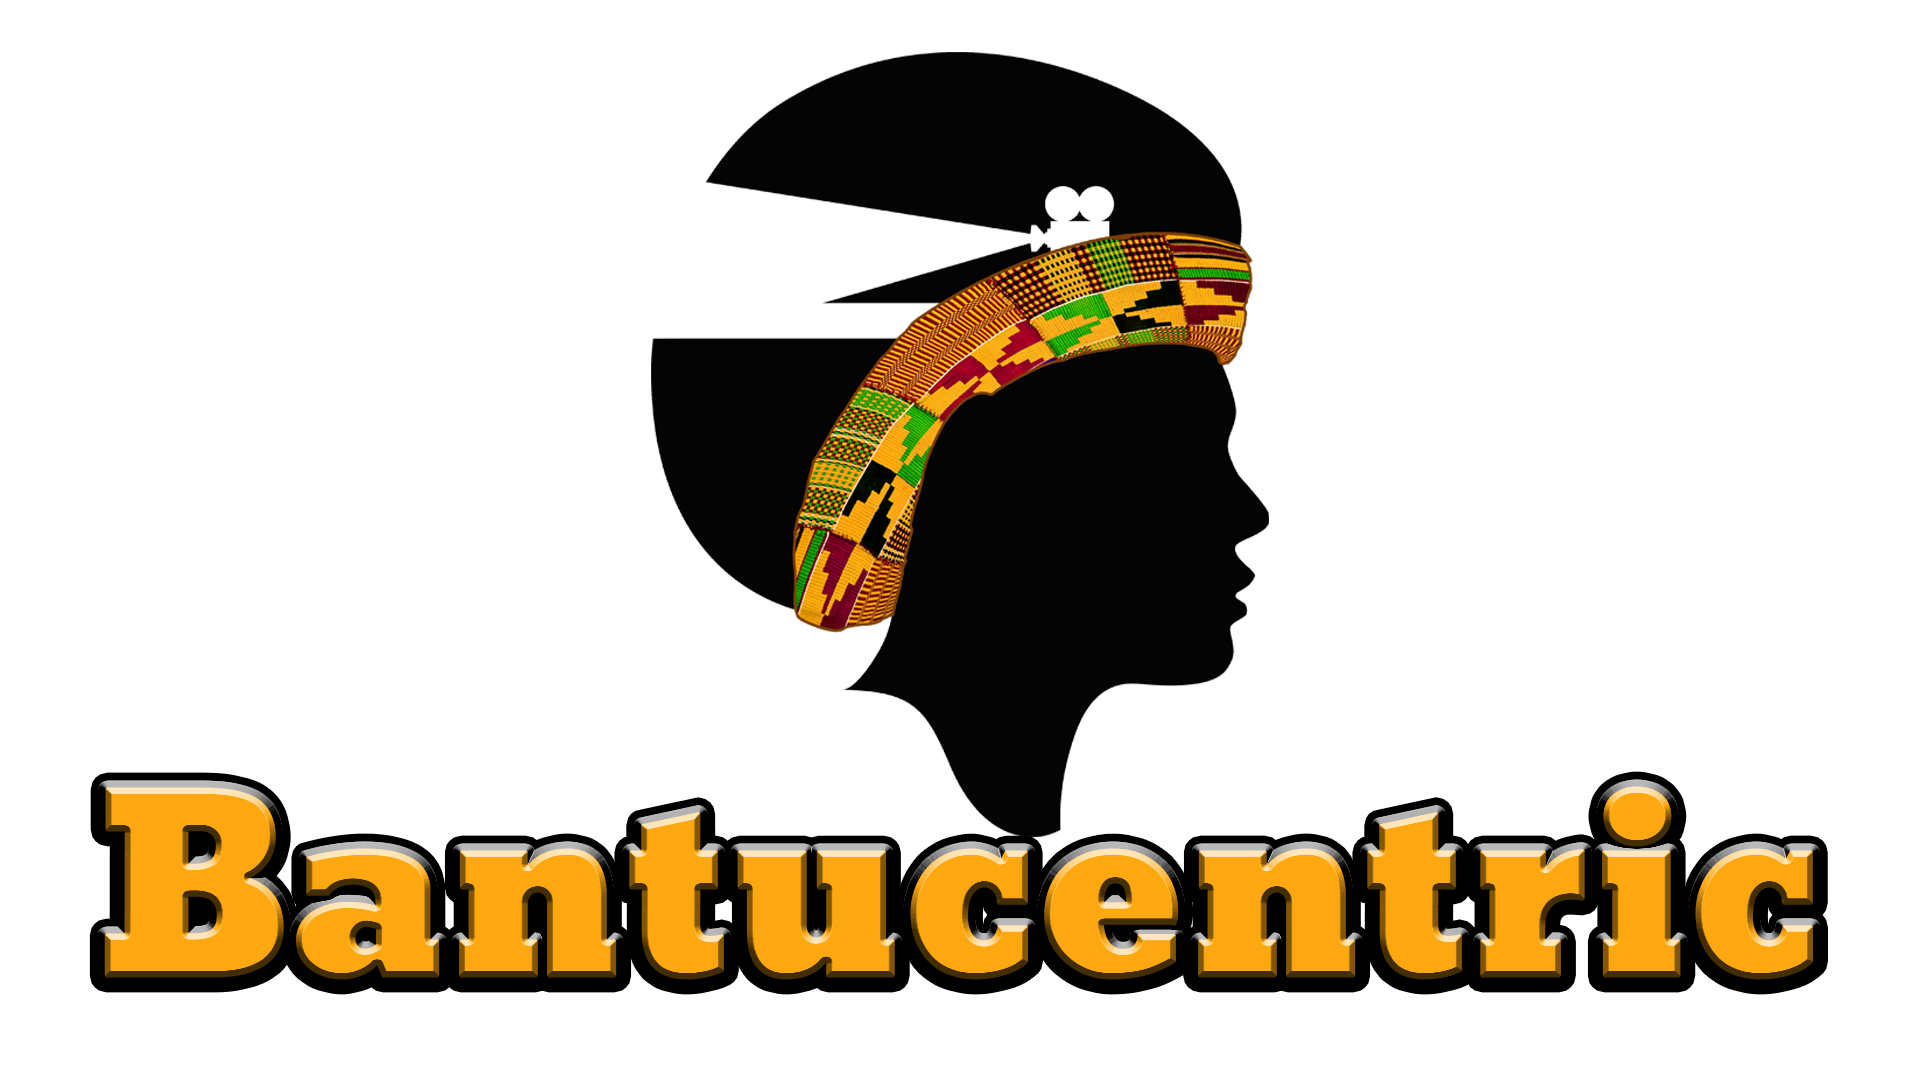 Bantucentric logo